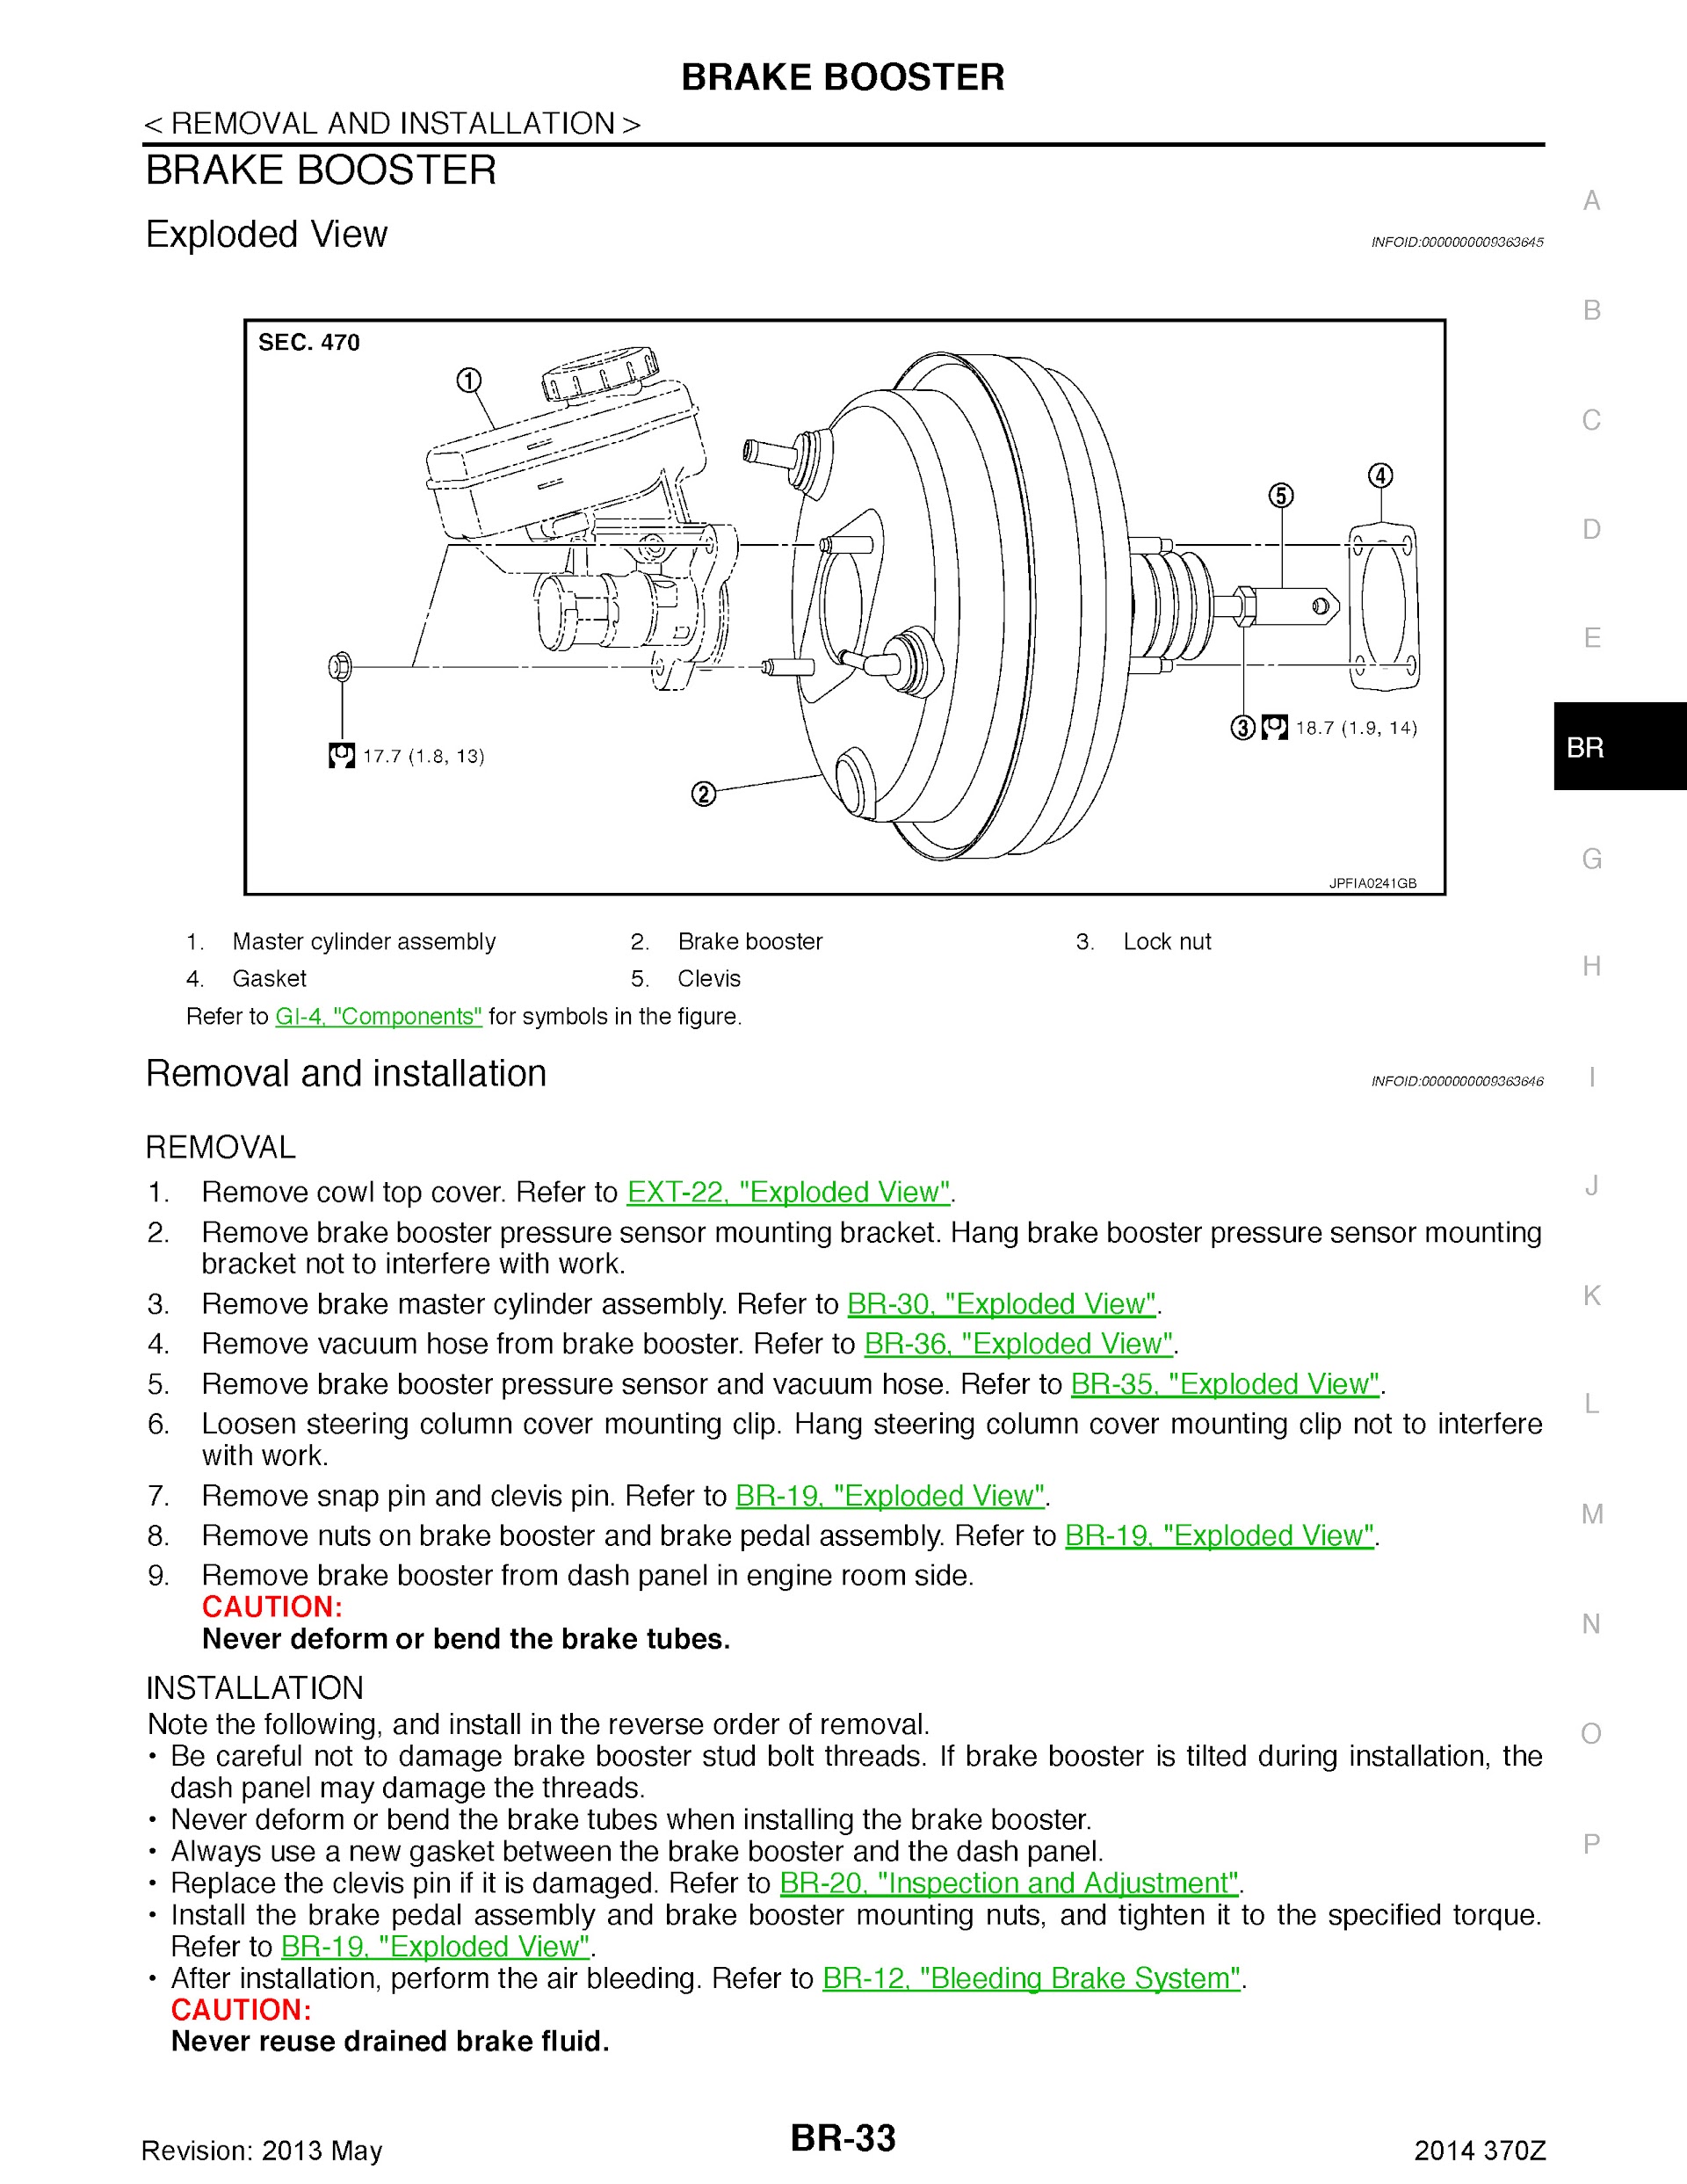 2014 Nissan 370Z Repair Manual, Brake Booster